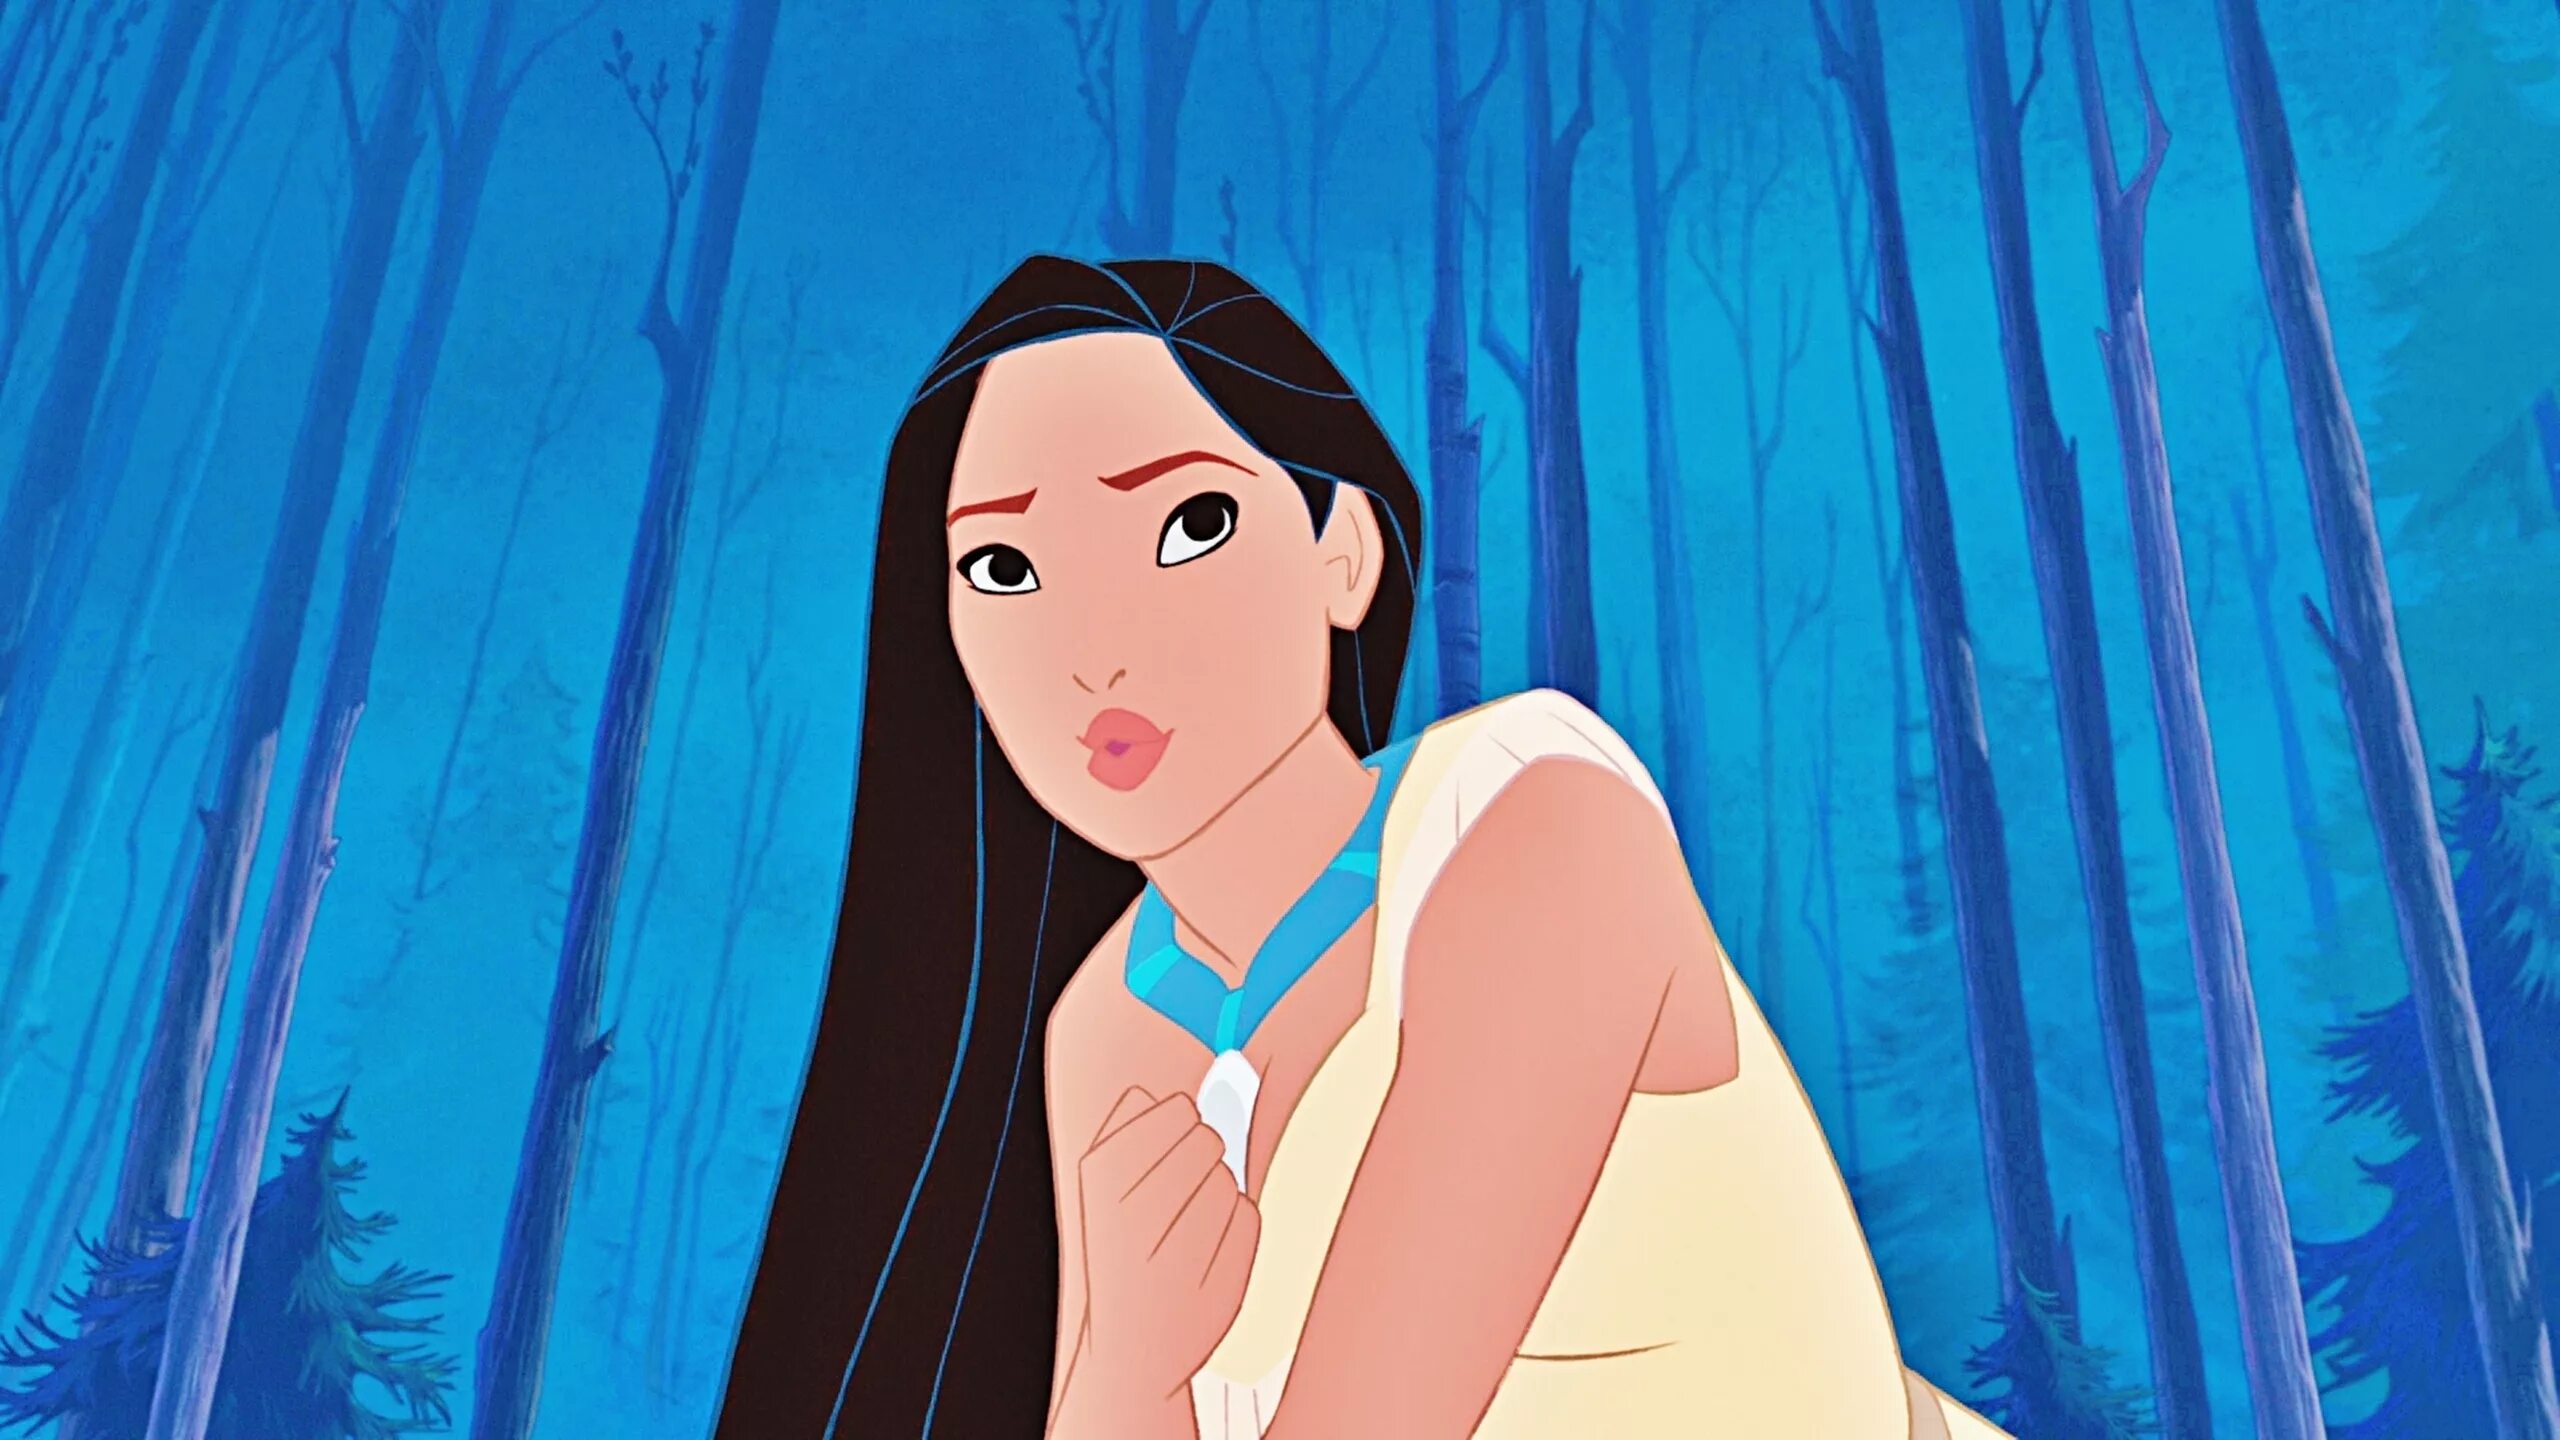 Принцессы диснеяgjrf[jyntc. Принцессы: Покахонтас. Принцессы Disney Покахонтас.